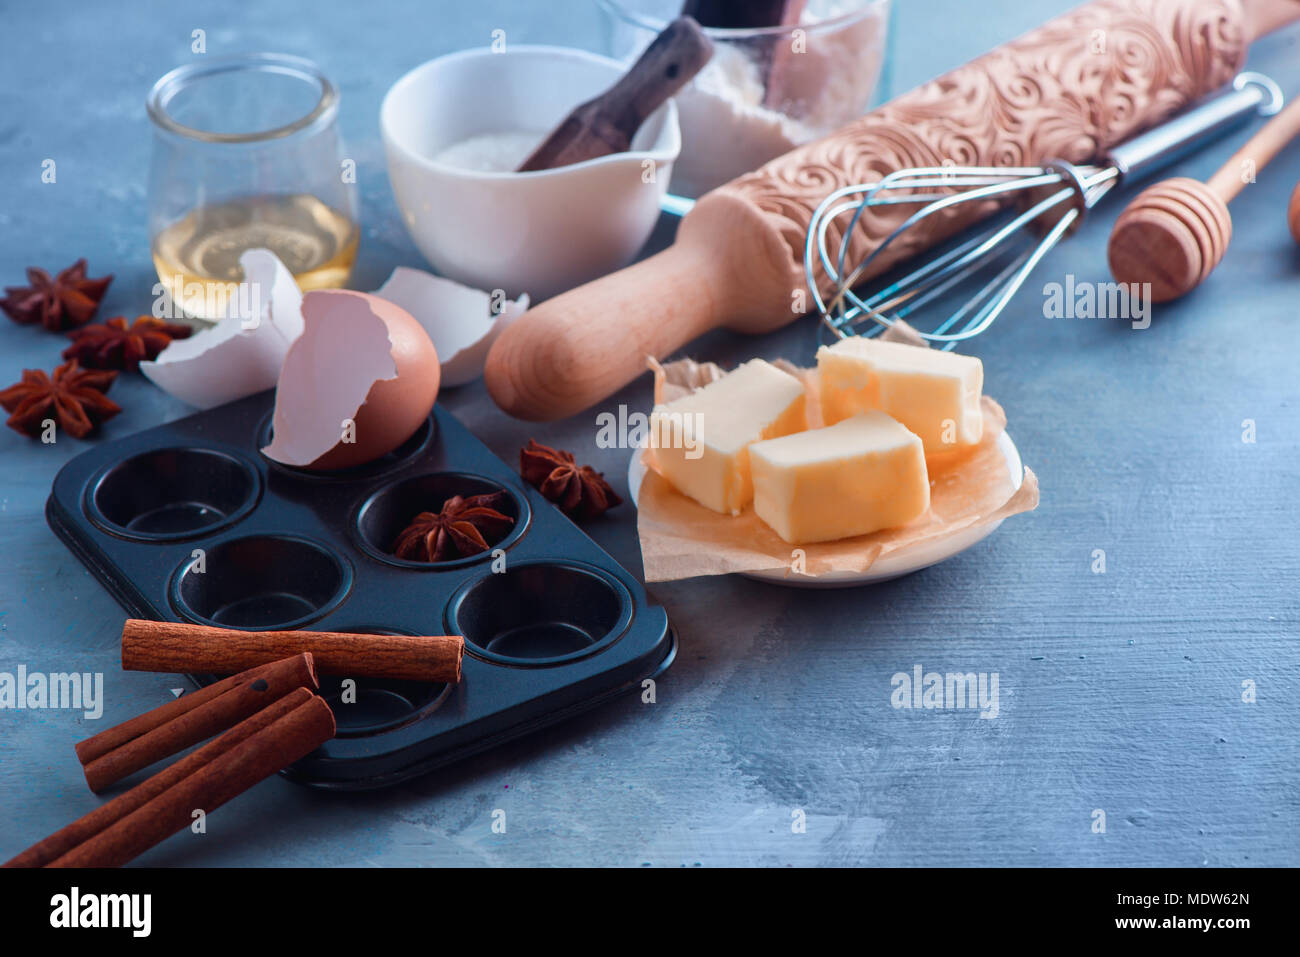 Kochen Konzept mit Backen Werkzeuge und Zutaten. Ein nudelholz, Honig Löffel, ein Muffin Tin, ein Schneebesen, Mehl, buter und Eierschale auf einen konkreten Hintergrund mit kopieren. Stockfoto